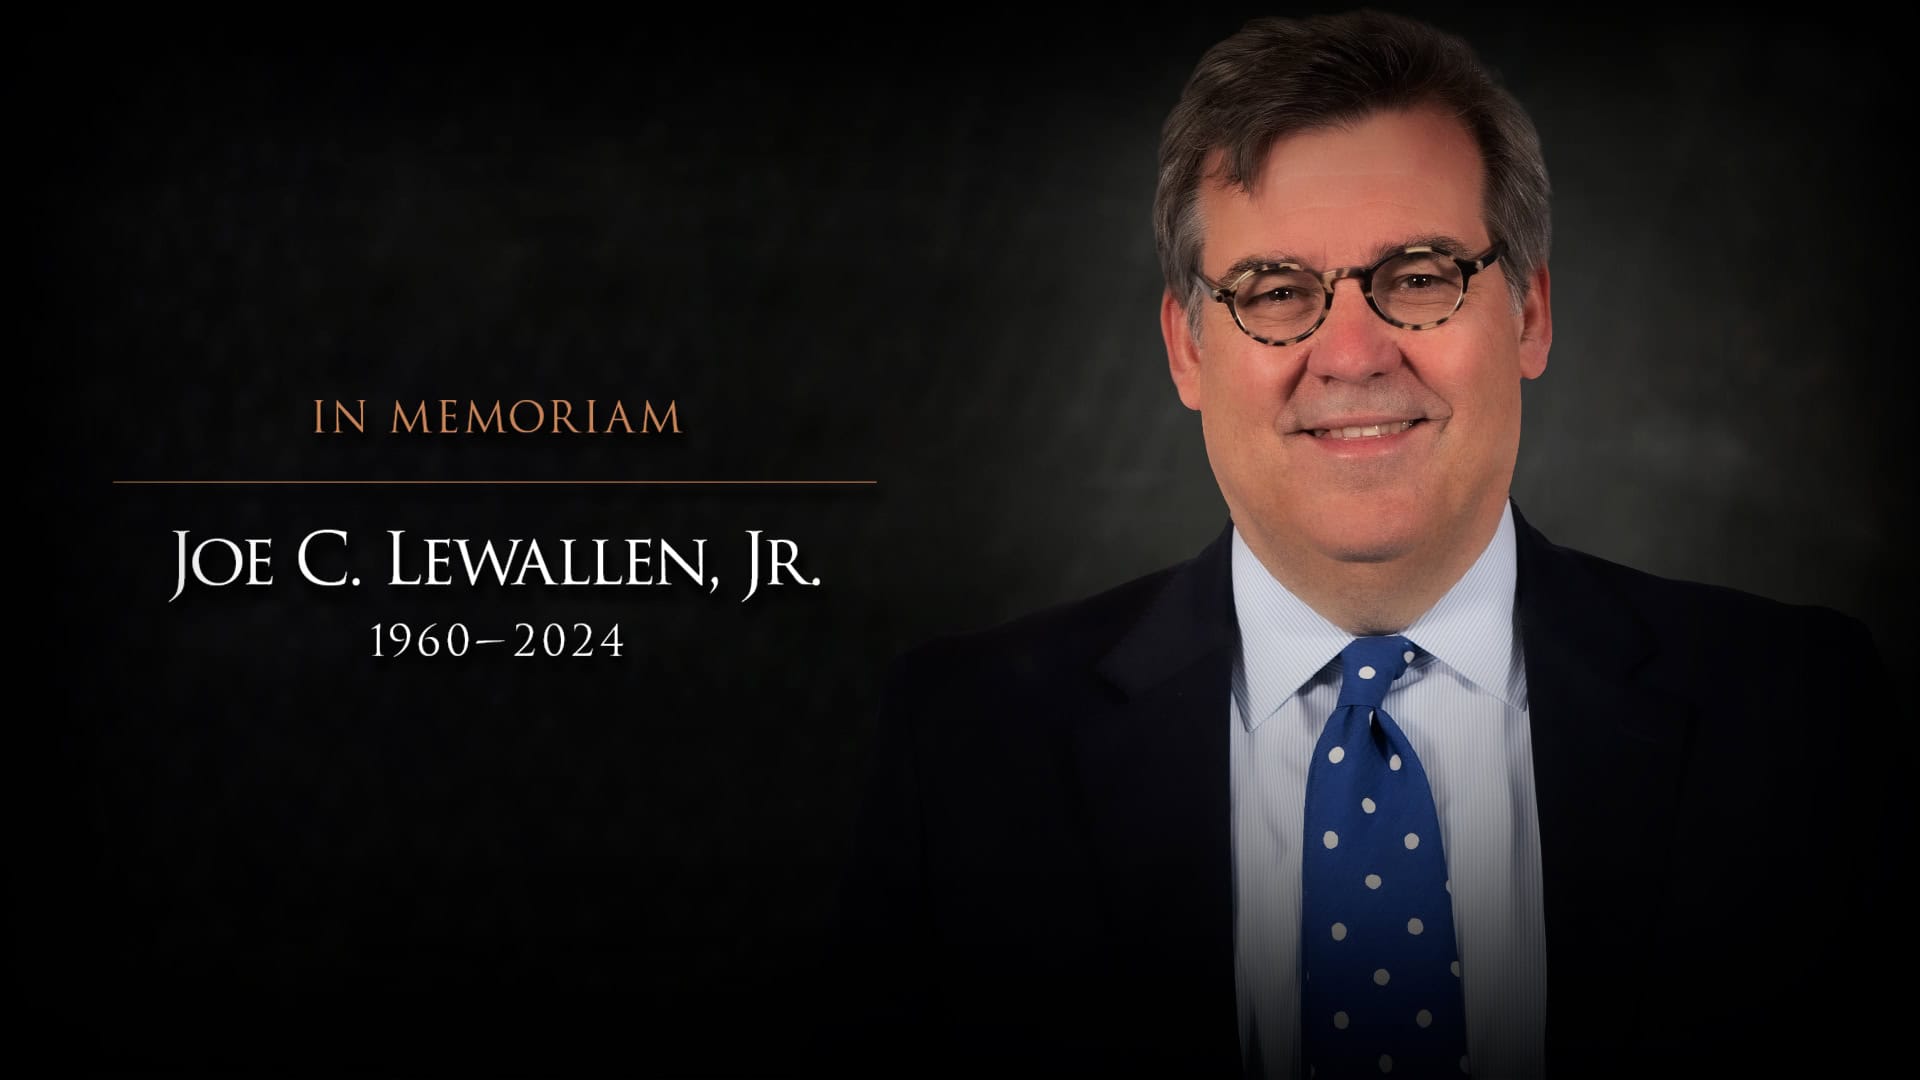 Official firm portrait of Joe Lewallen for his "In Memoriam" tribute